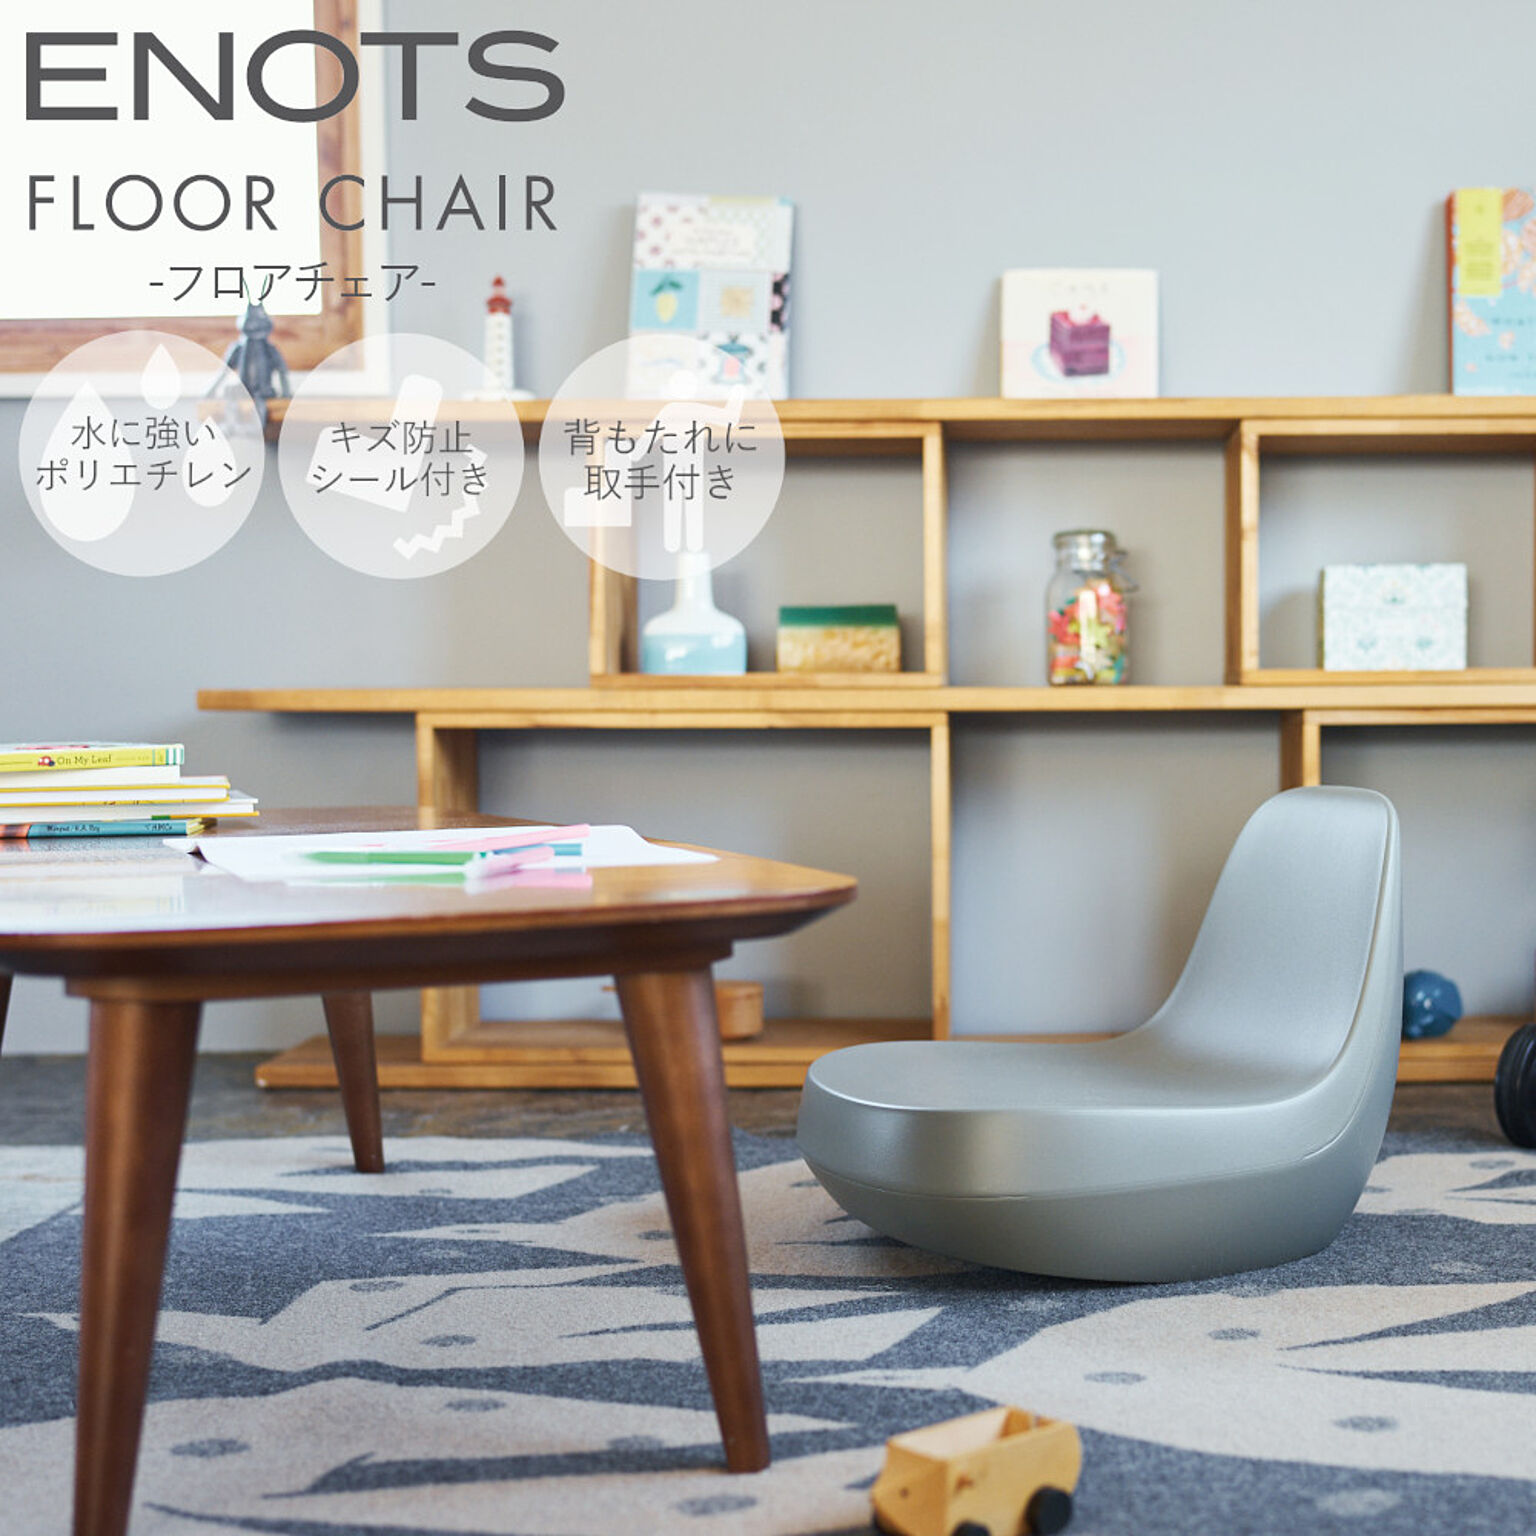 スタイリッシュ 座椅子 エノッツ フロアチェア ENOFC ENOTS 岩谷マテリアル プラスチック製 樹脂製